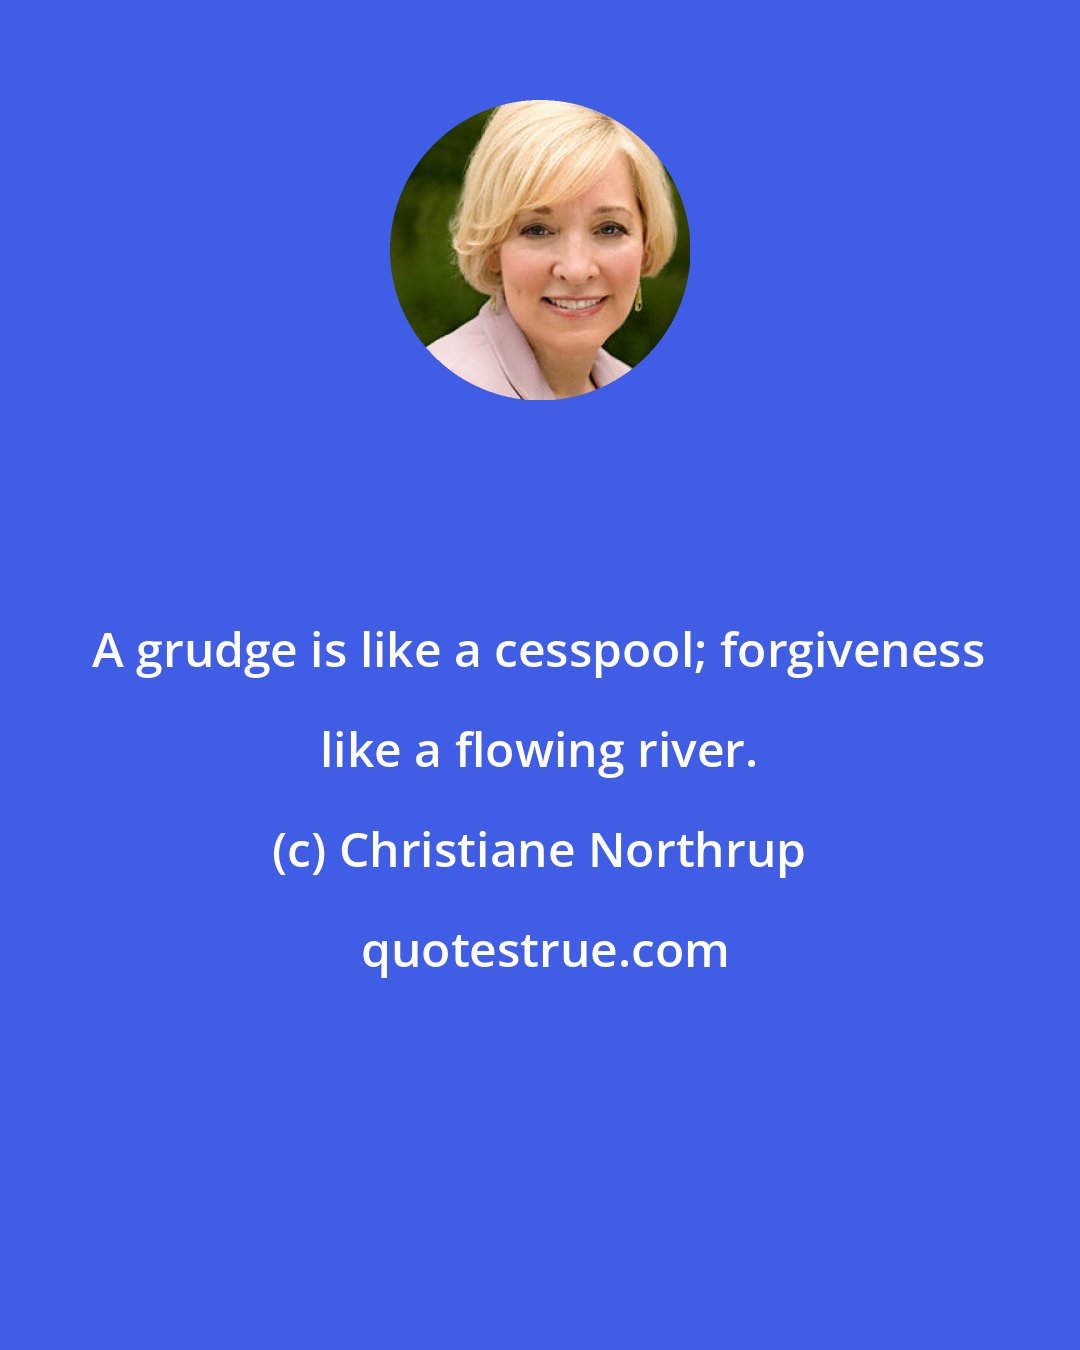 Christiane Northrup: A grudge is like a cesspool; forgiveness like a flowing river.